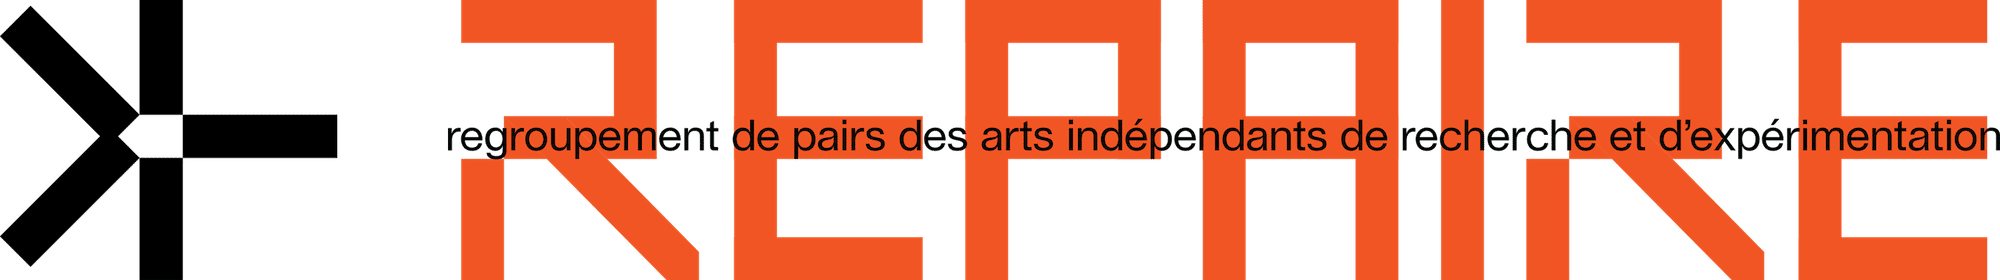 REPAIRE – Regroupement de pairs des arts indépendants